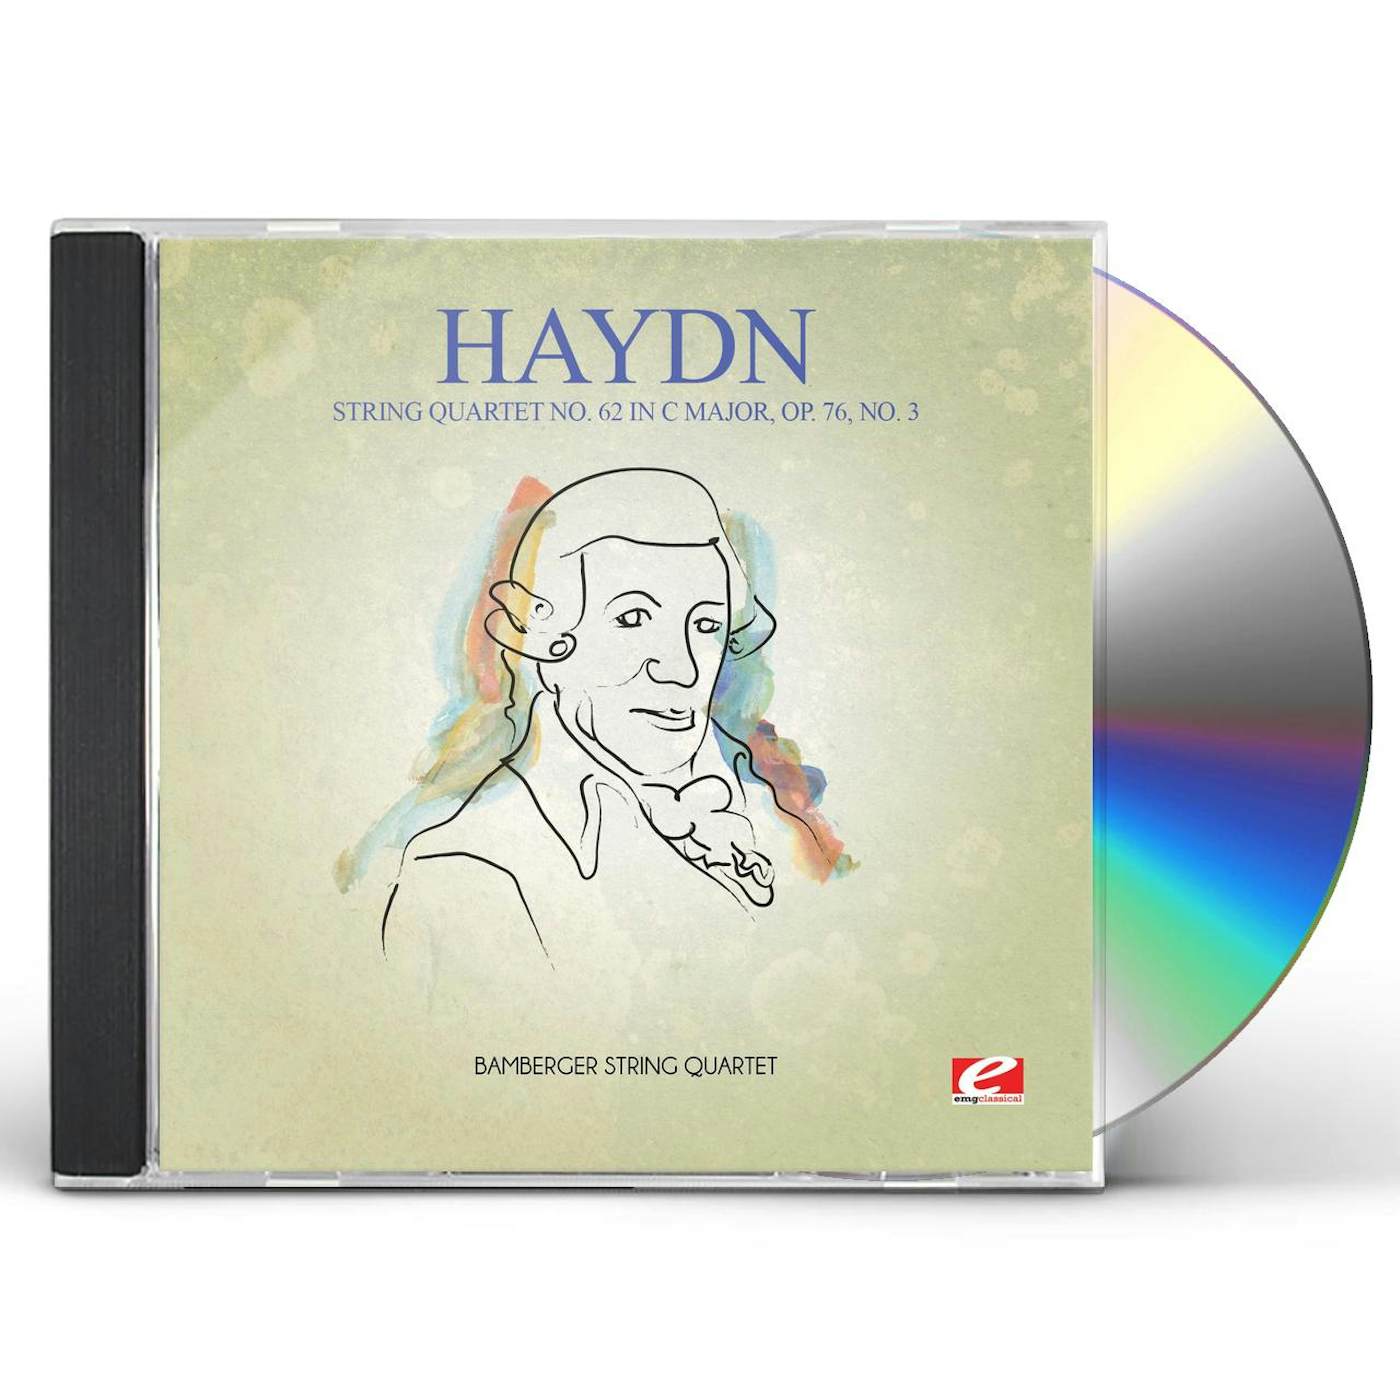 Haydn STRING QUARTET 62 IN C MAJOR OP 76 NO 3 CD